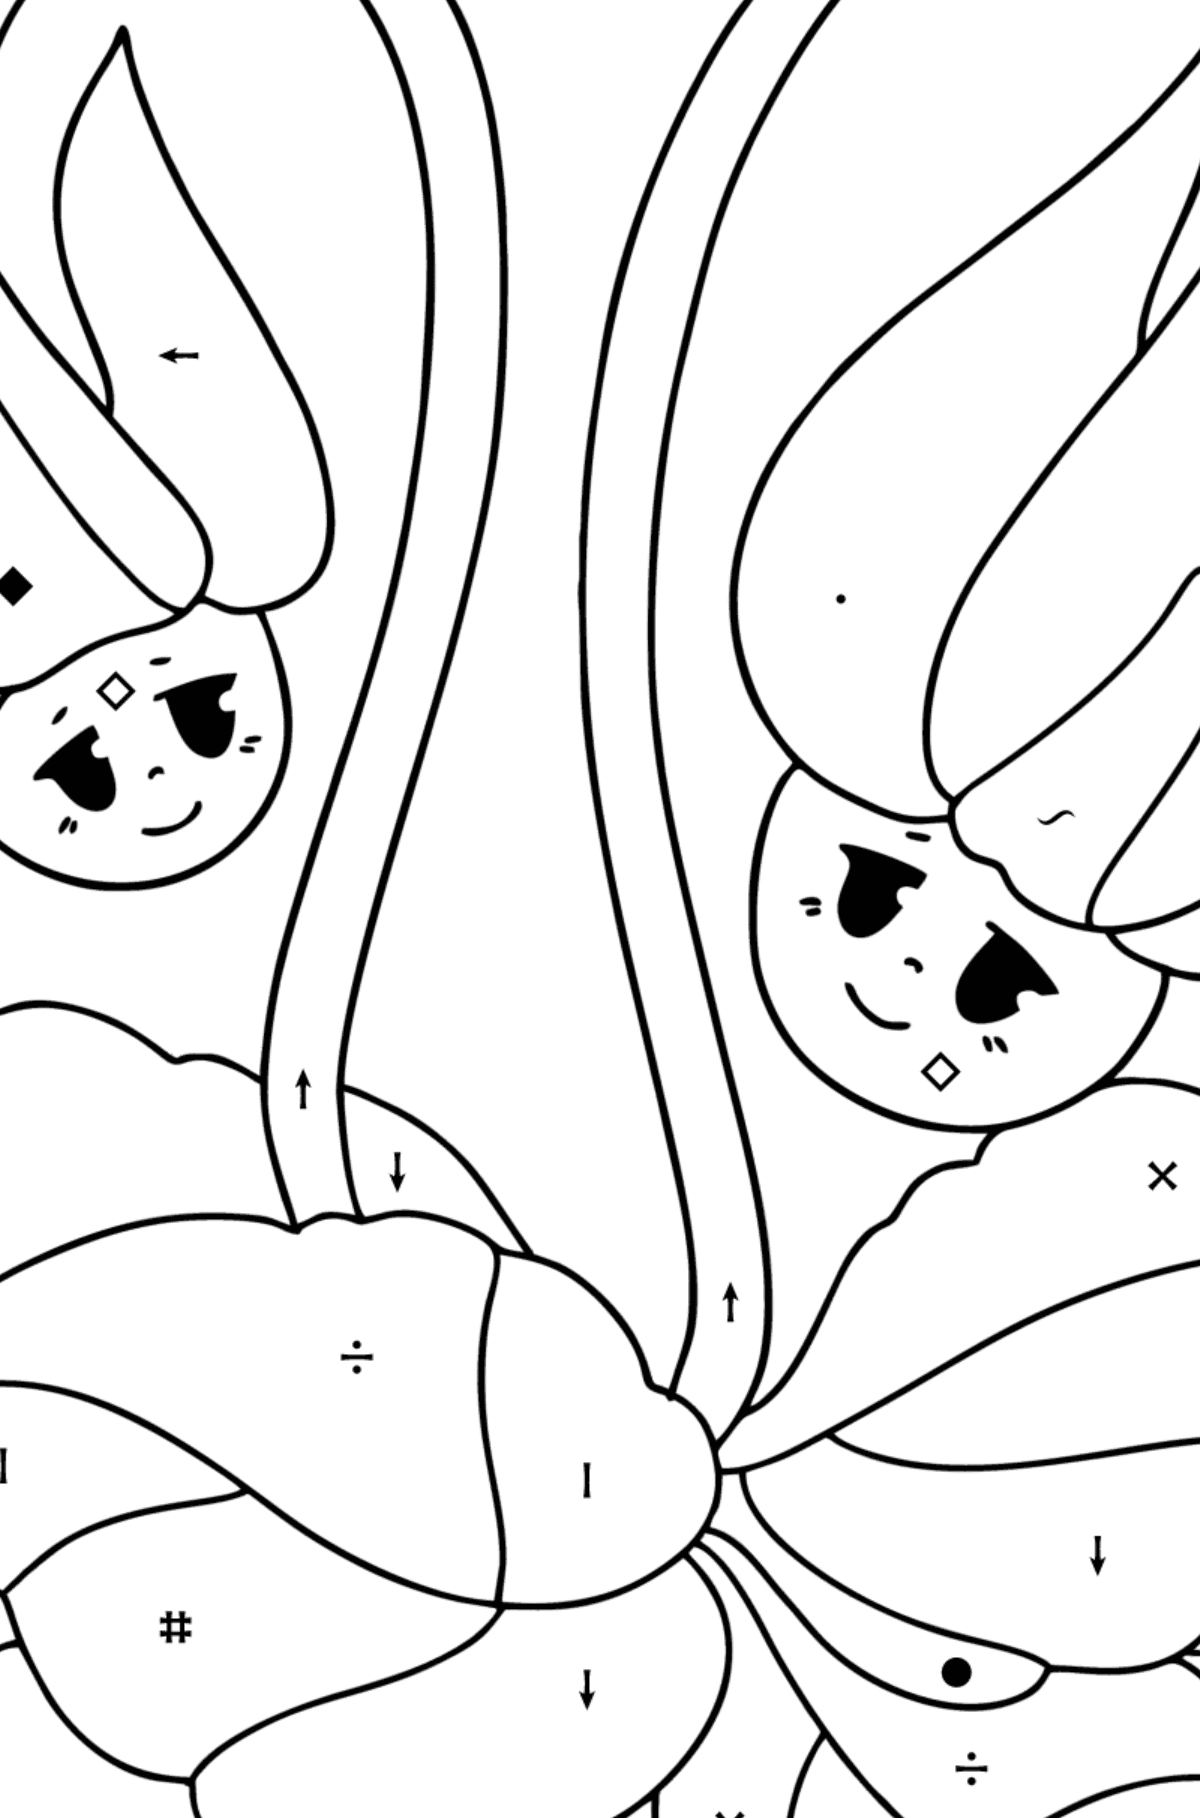 Tegning til farvning Cyclamen, blomster med øjne - Farvelægning af symbolerne for børn